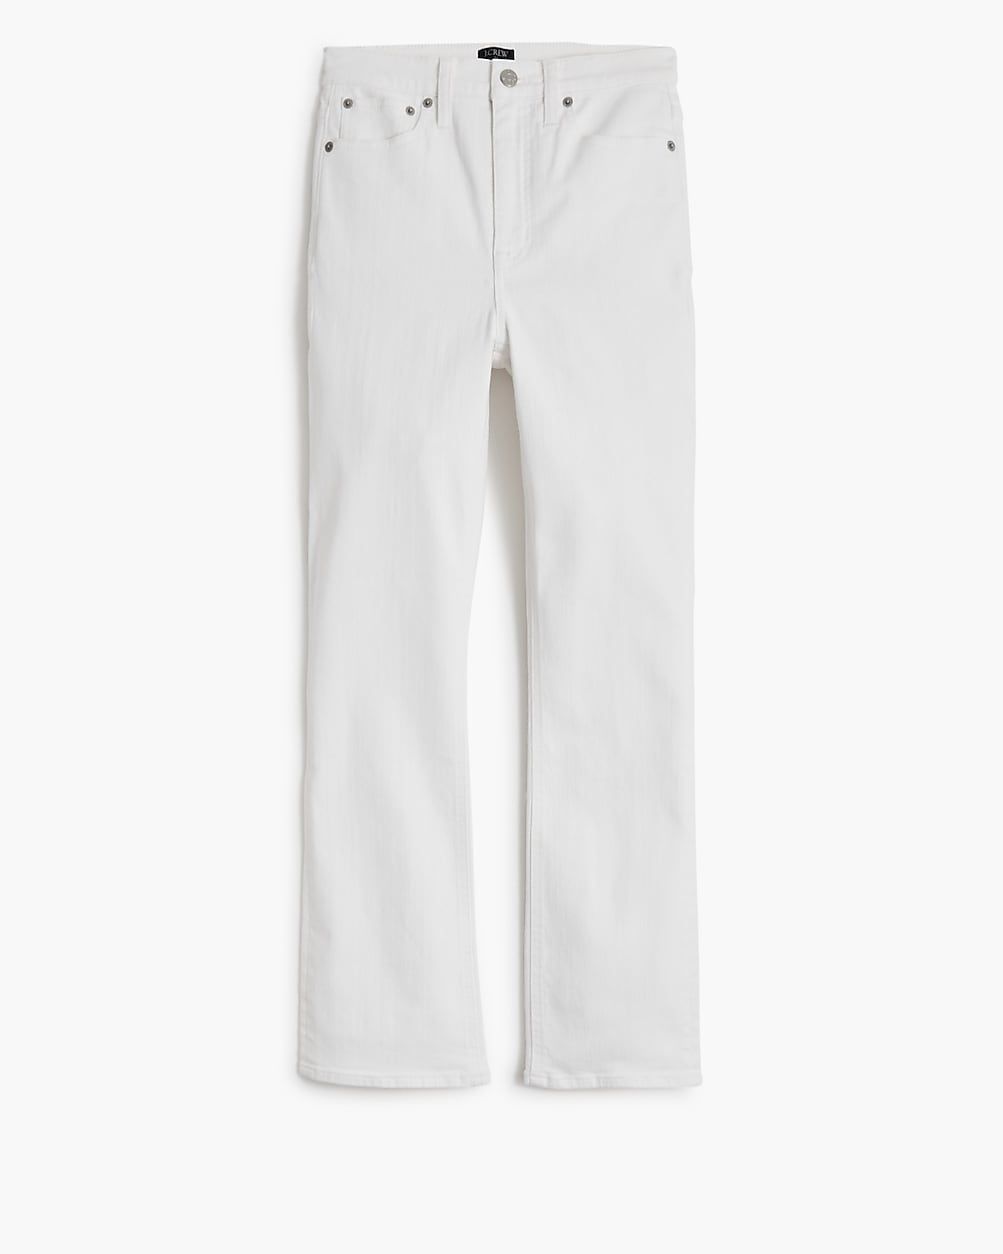 Flare crop high-rise white jean in signature stretch | J.Crew Factory